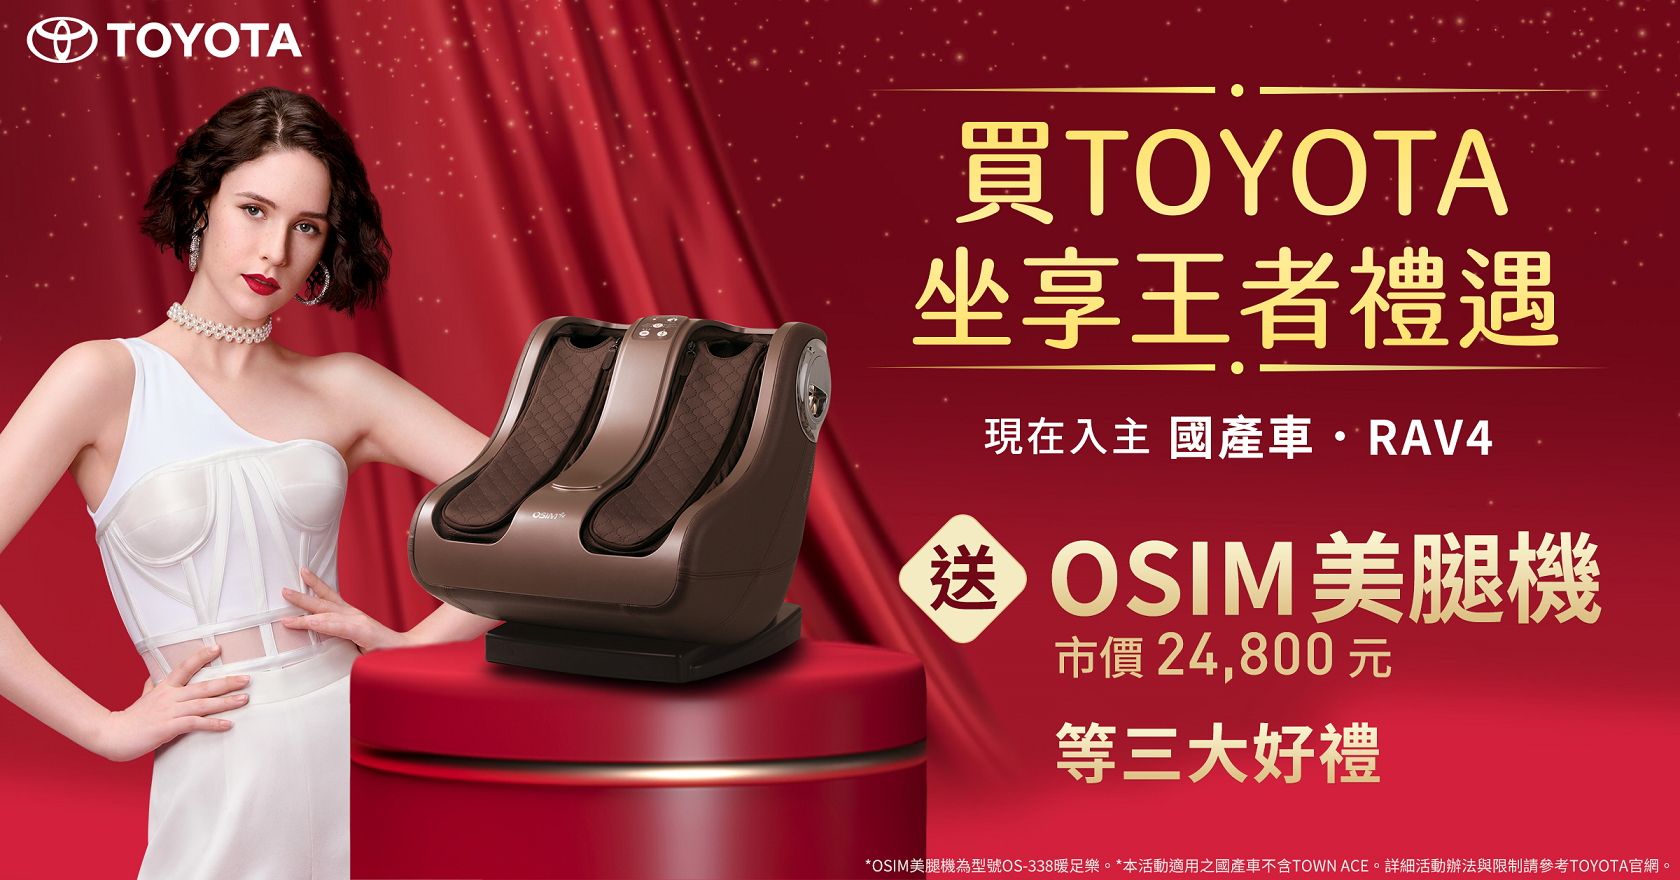 1 月買 Toyota 國產車、RAV4 送「OSIM 美腿機」(市價 24,800 元)再加碼最高 70 萬 0 利率、5 年延長保固等好禮。